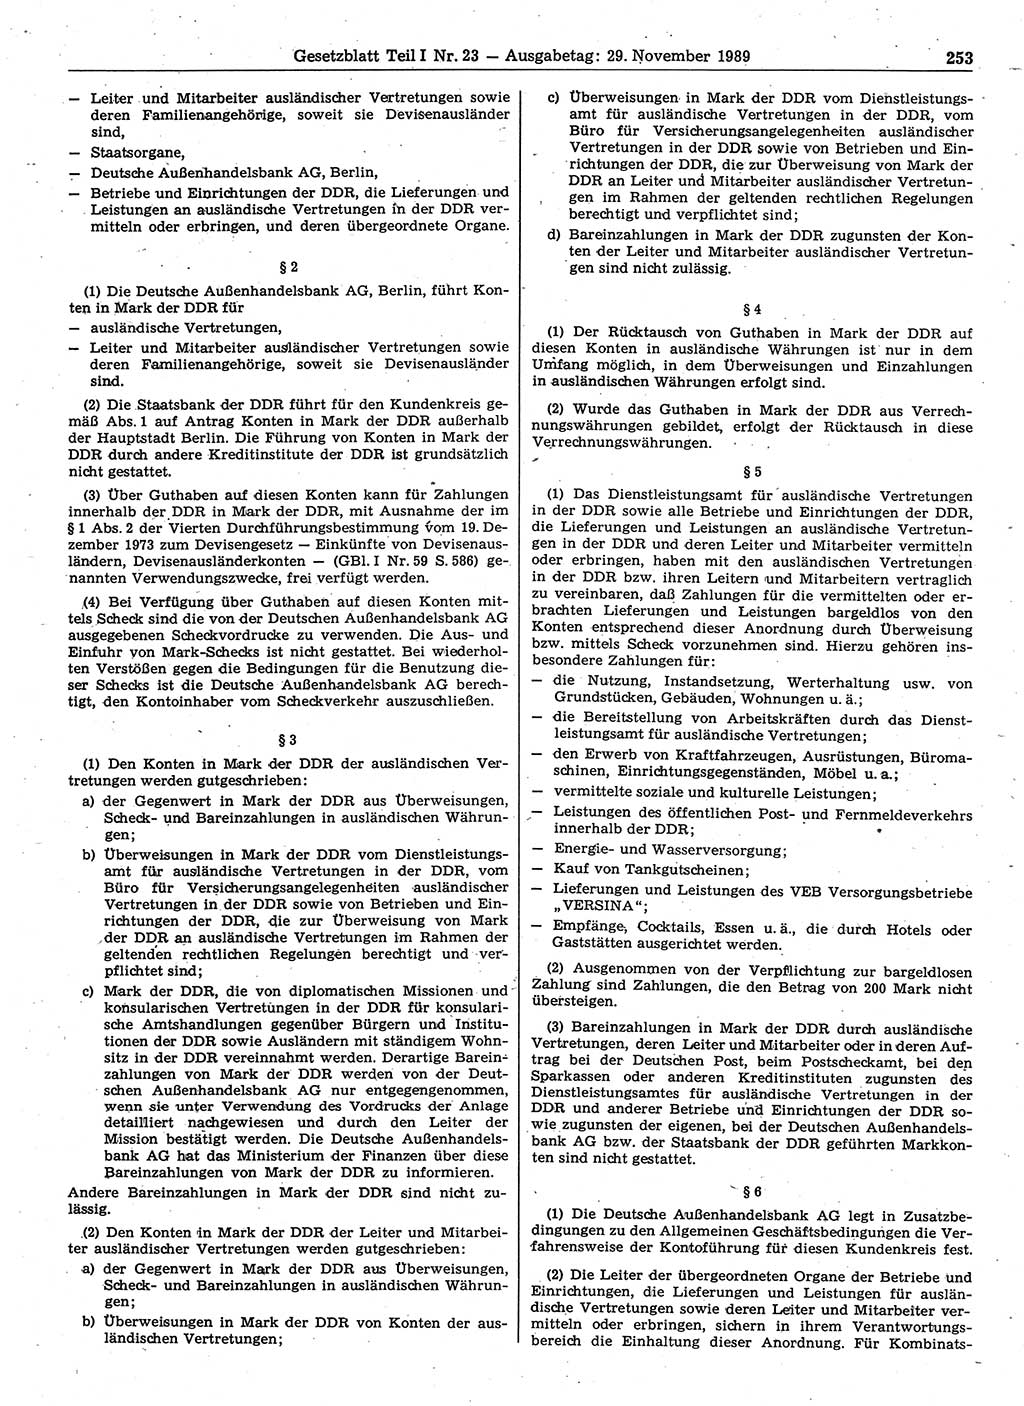 Gesetzblatt (GBl.) der Deutschen Demokratischen Republik (DDR) Teil Ⅰ 1989, Seite 253 (GBl. DDR Ⅰ 1989, S. 253)